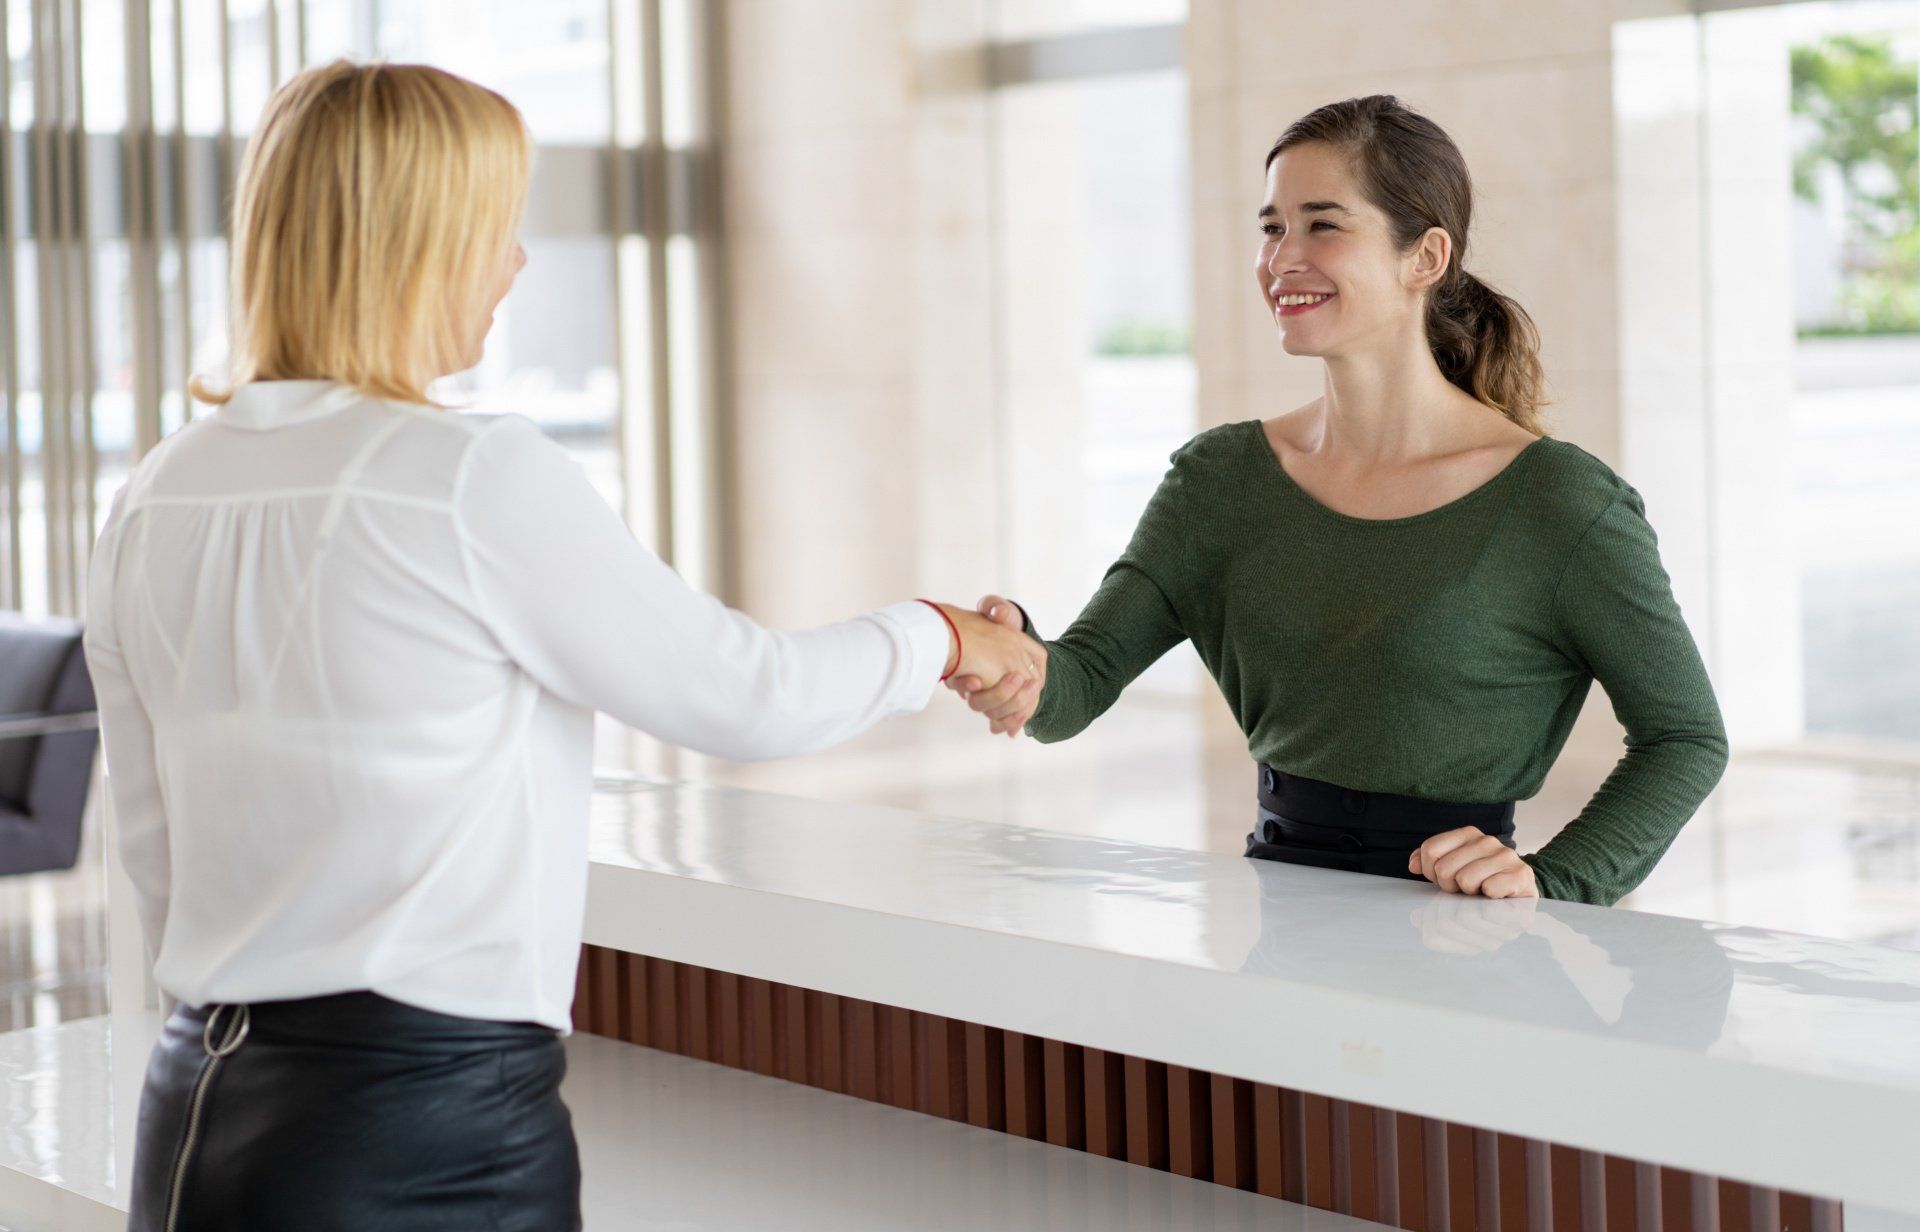 Women shaking hands across reception desk